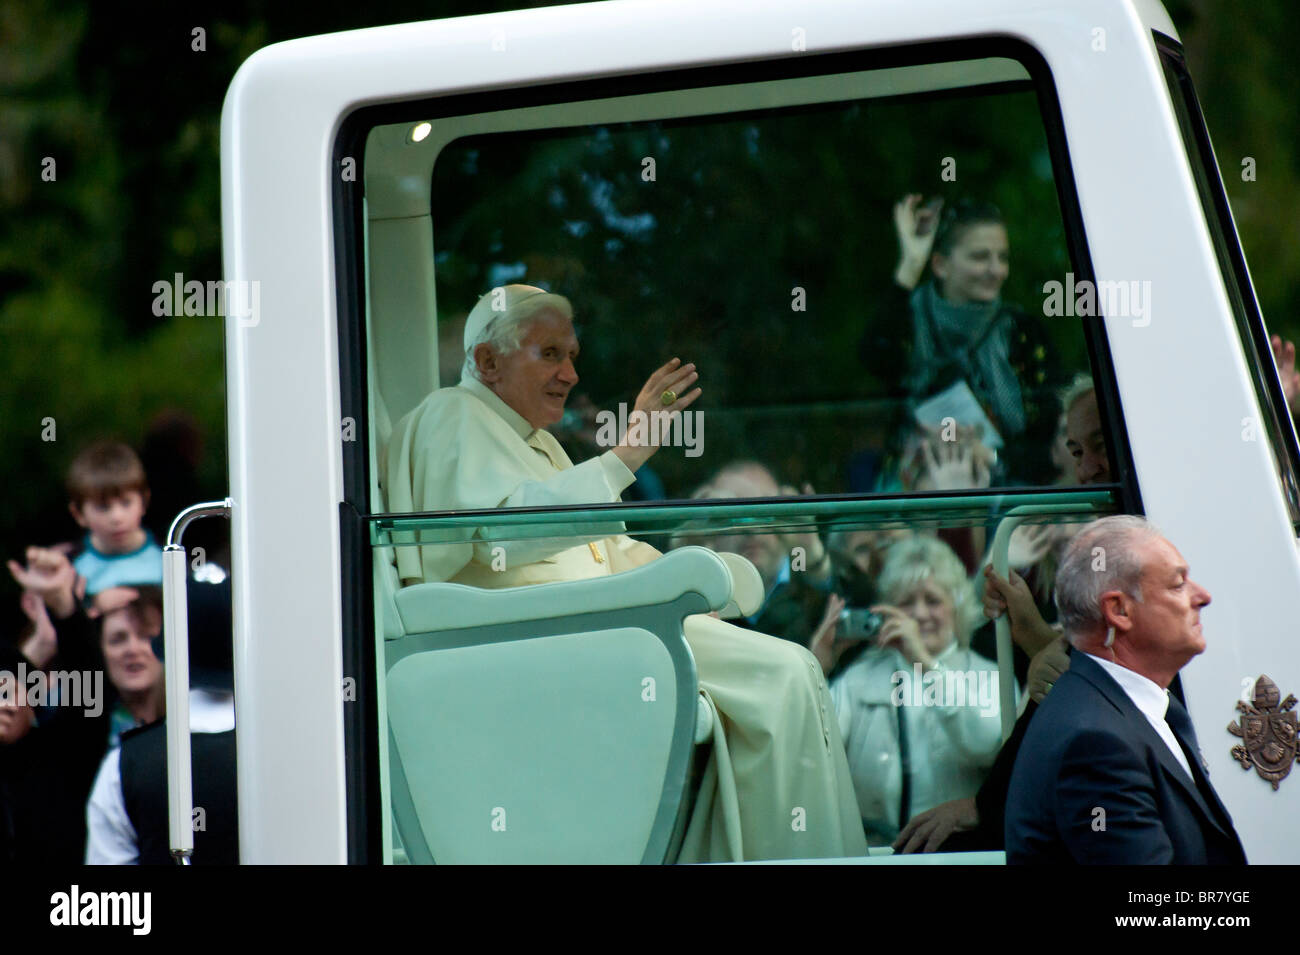 Saint Père, le Pape Benoît XVI transmet le Mall, Londres dans le cadre de sa visite d'État en Angleterre et en Écosse. Banque D'Images